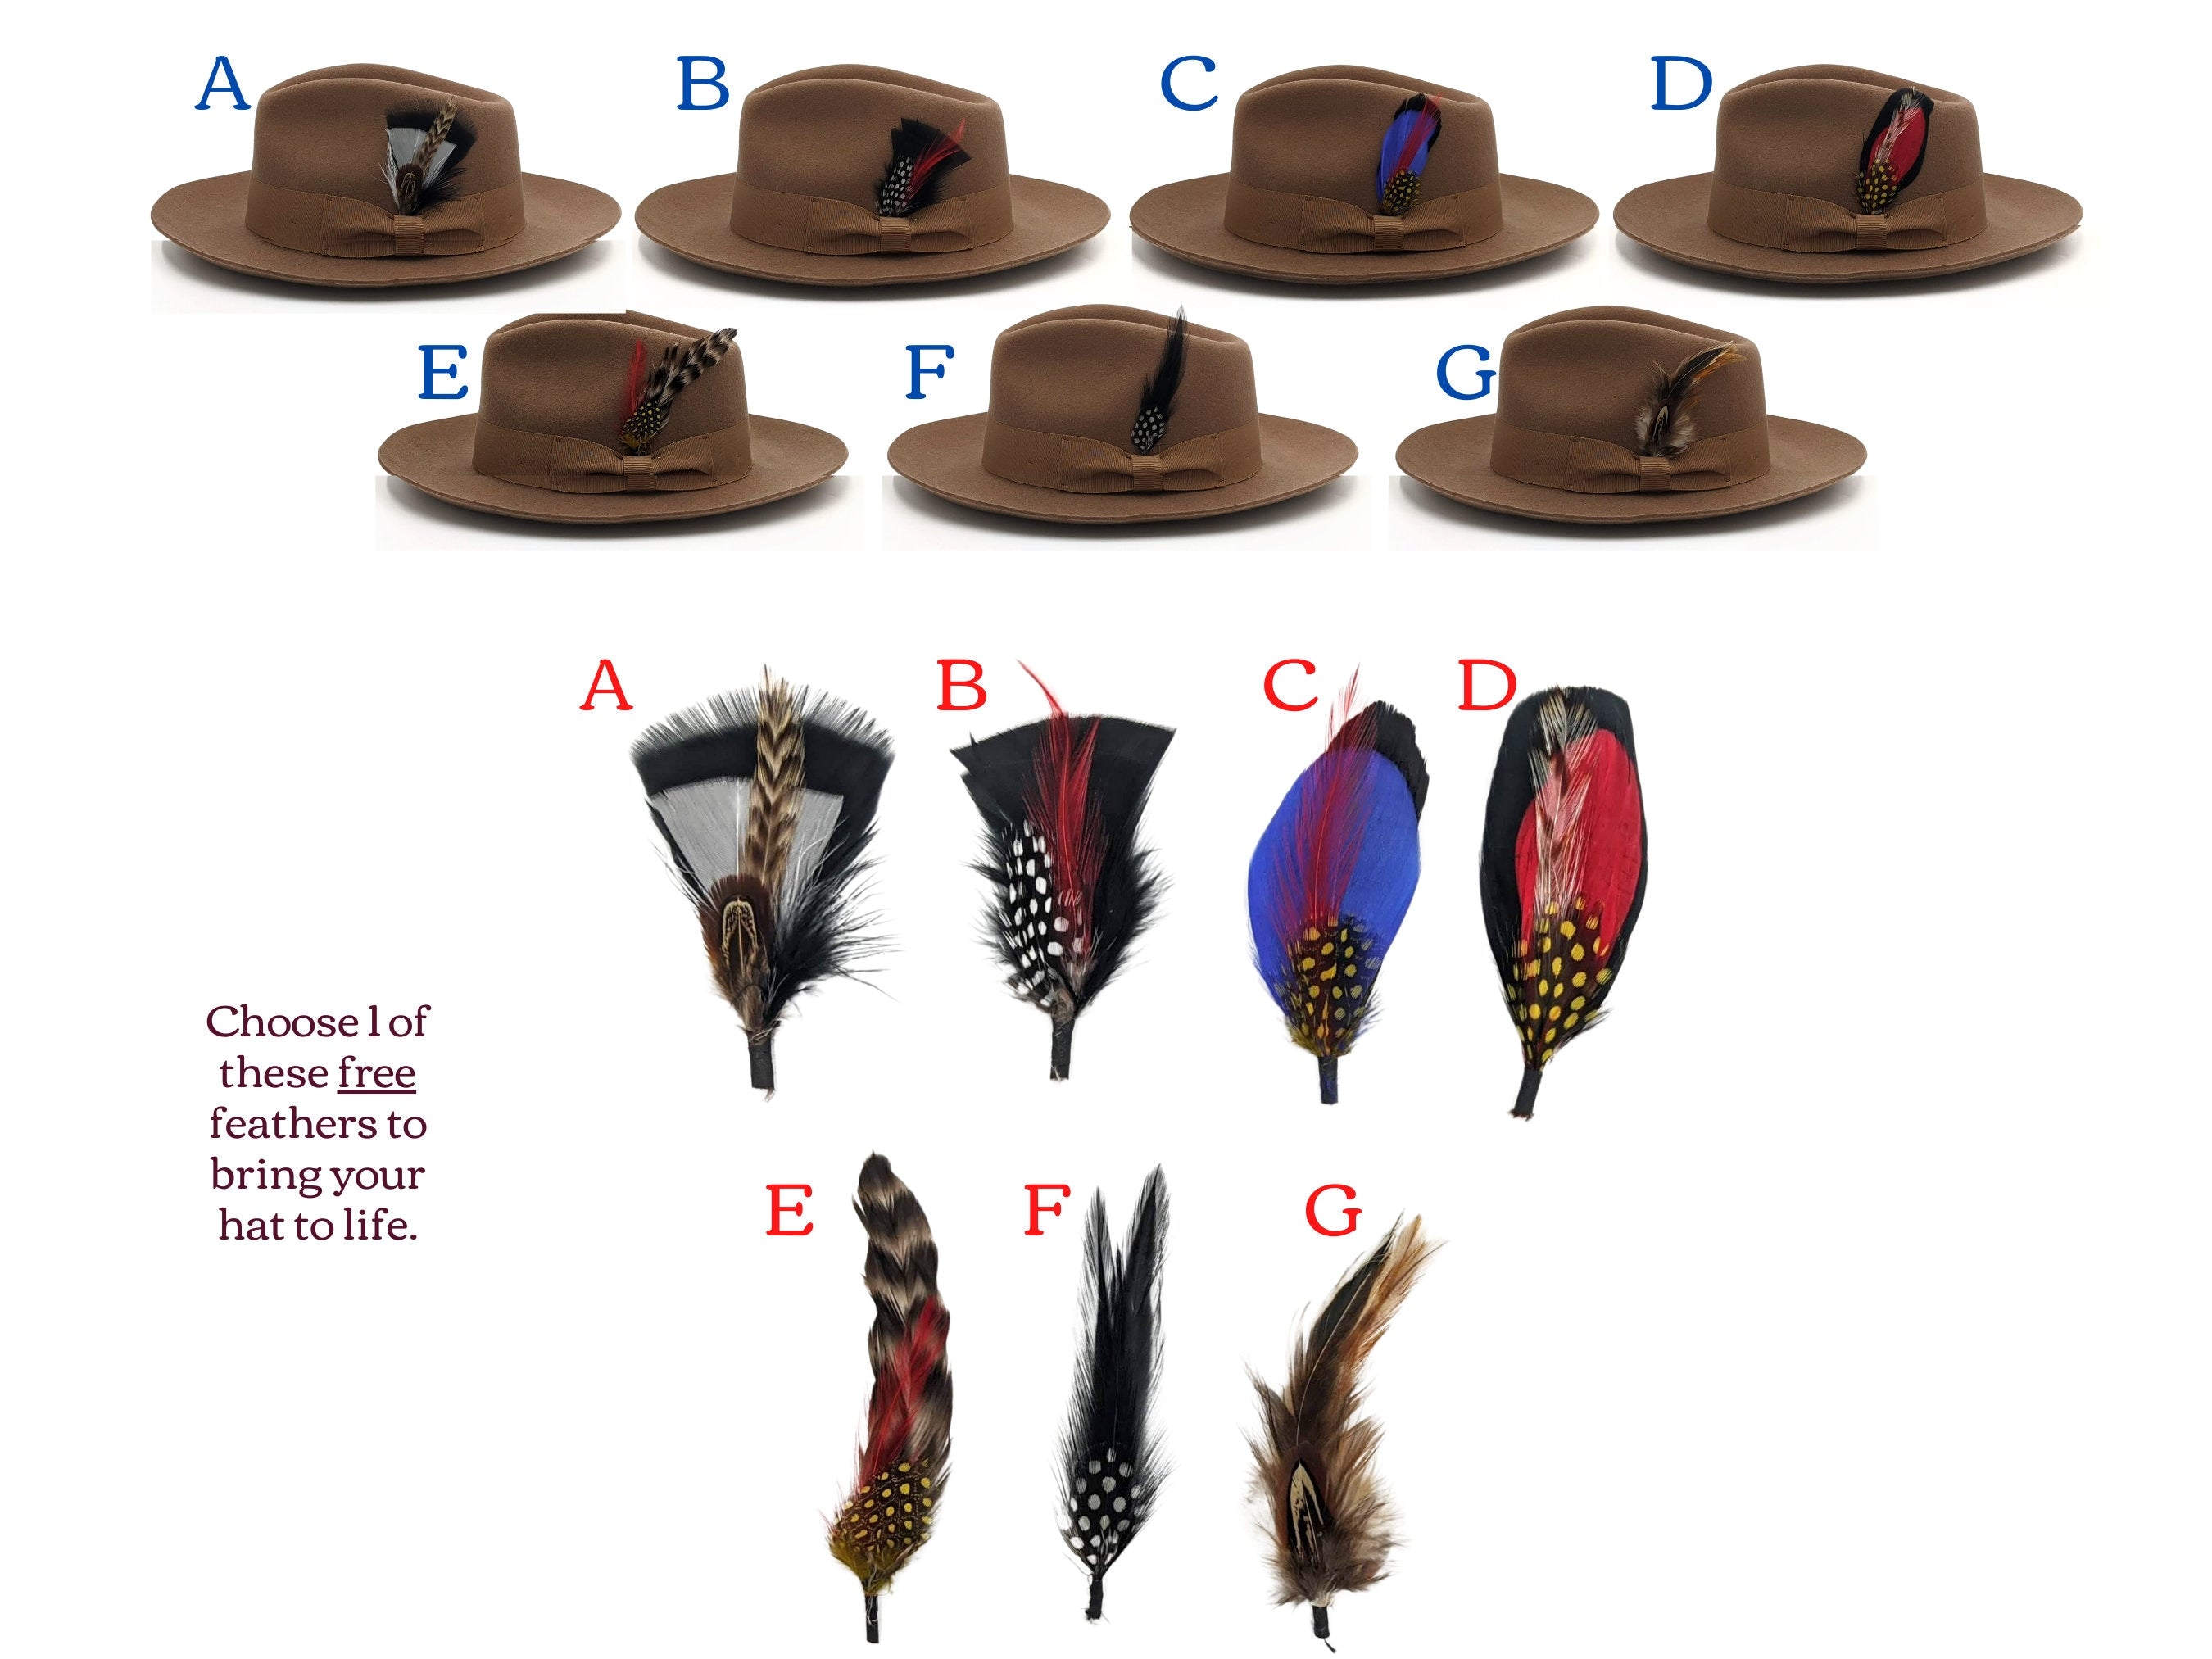 Indiana Jones Style Fedora Foldable Hat